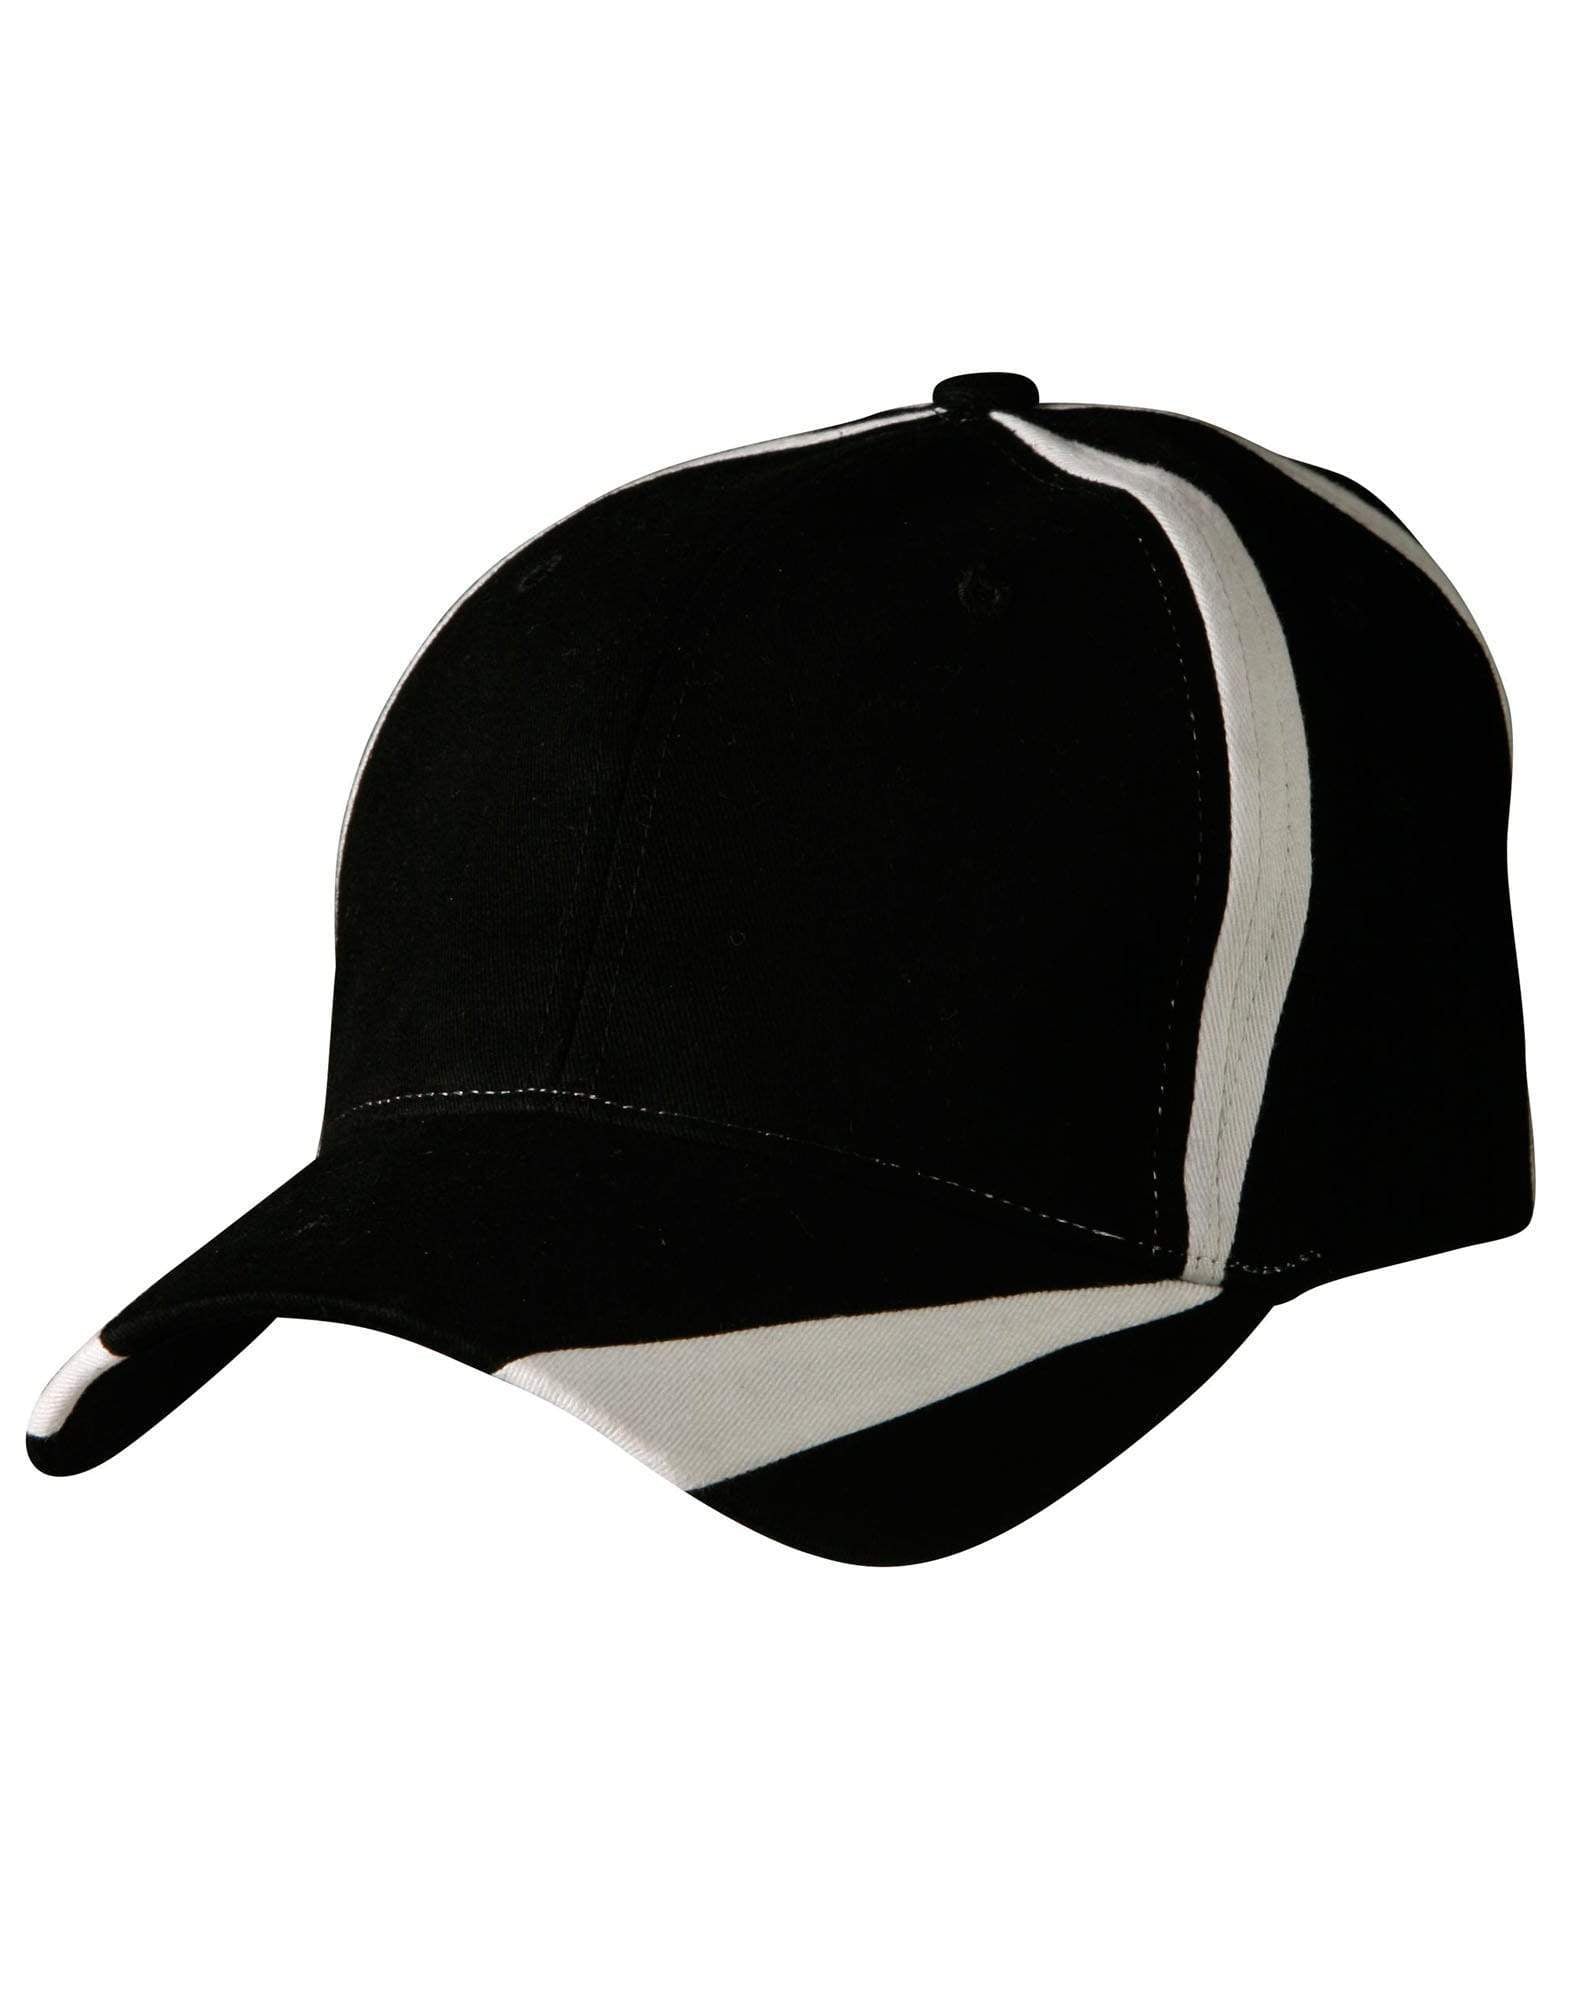 Peak & Crown Contrast Cap Ch81 Active Wear Winning Spirit Black/White One size 